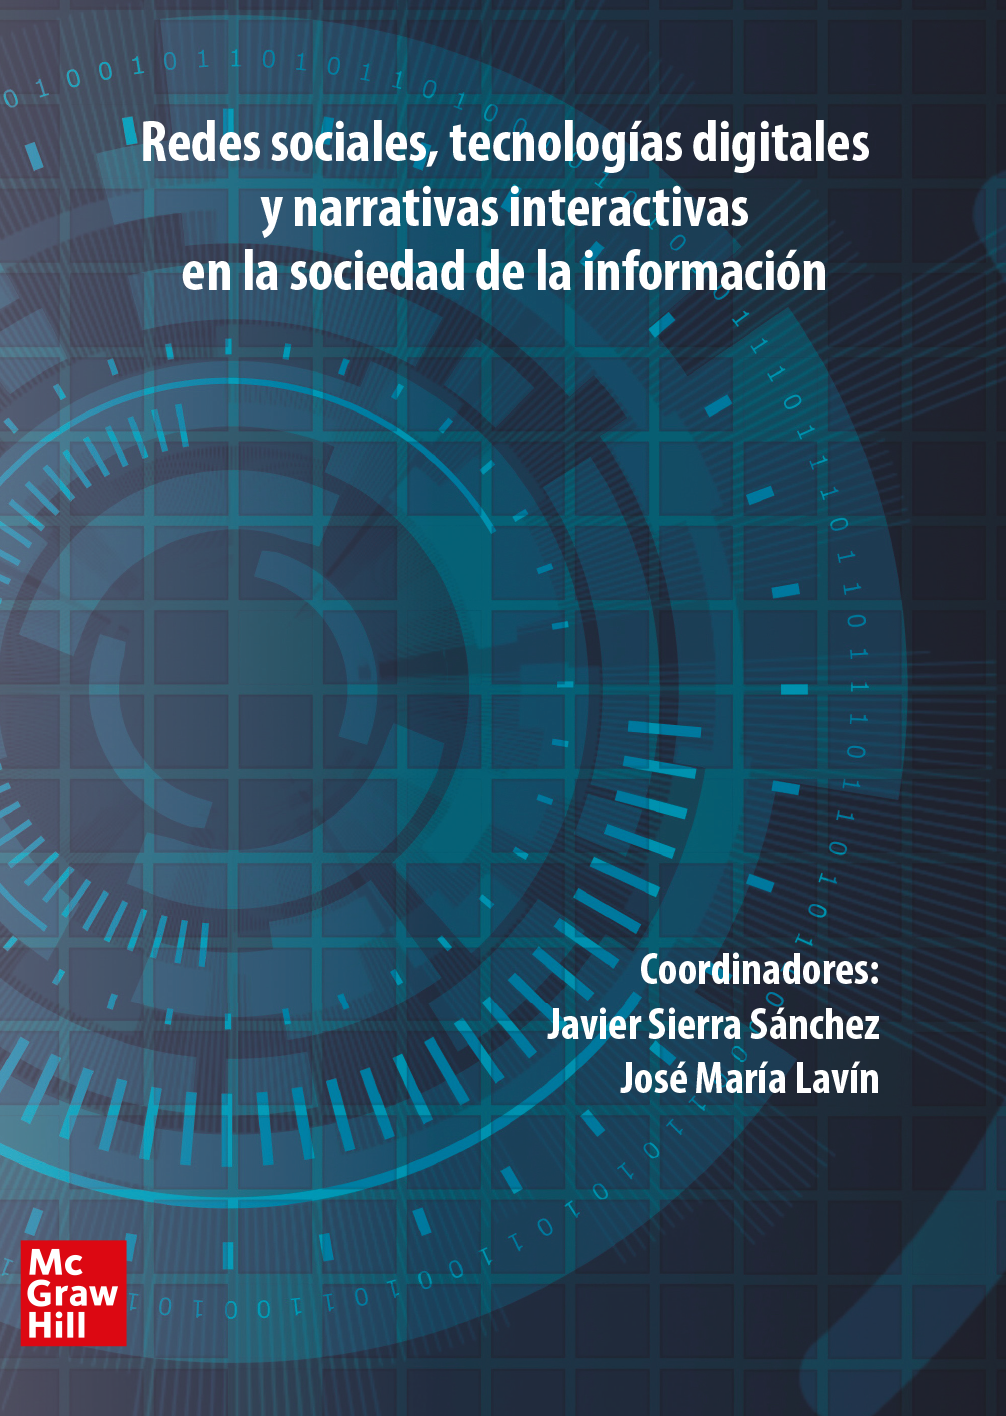 Redes sociales, tecnologías digitales y narrativas interactivas en la soc. de la inf. Congreso Comunicación Javier Sierra. Vol 2 de 2